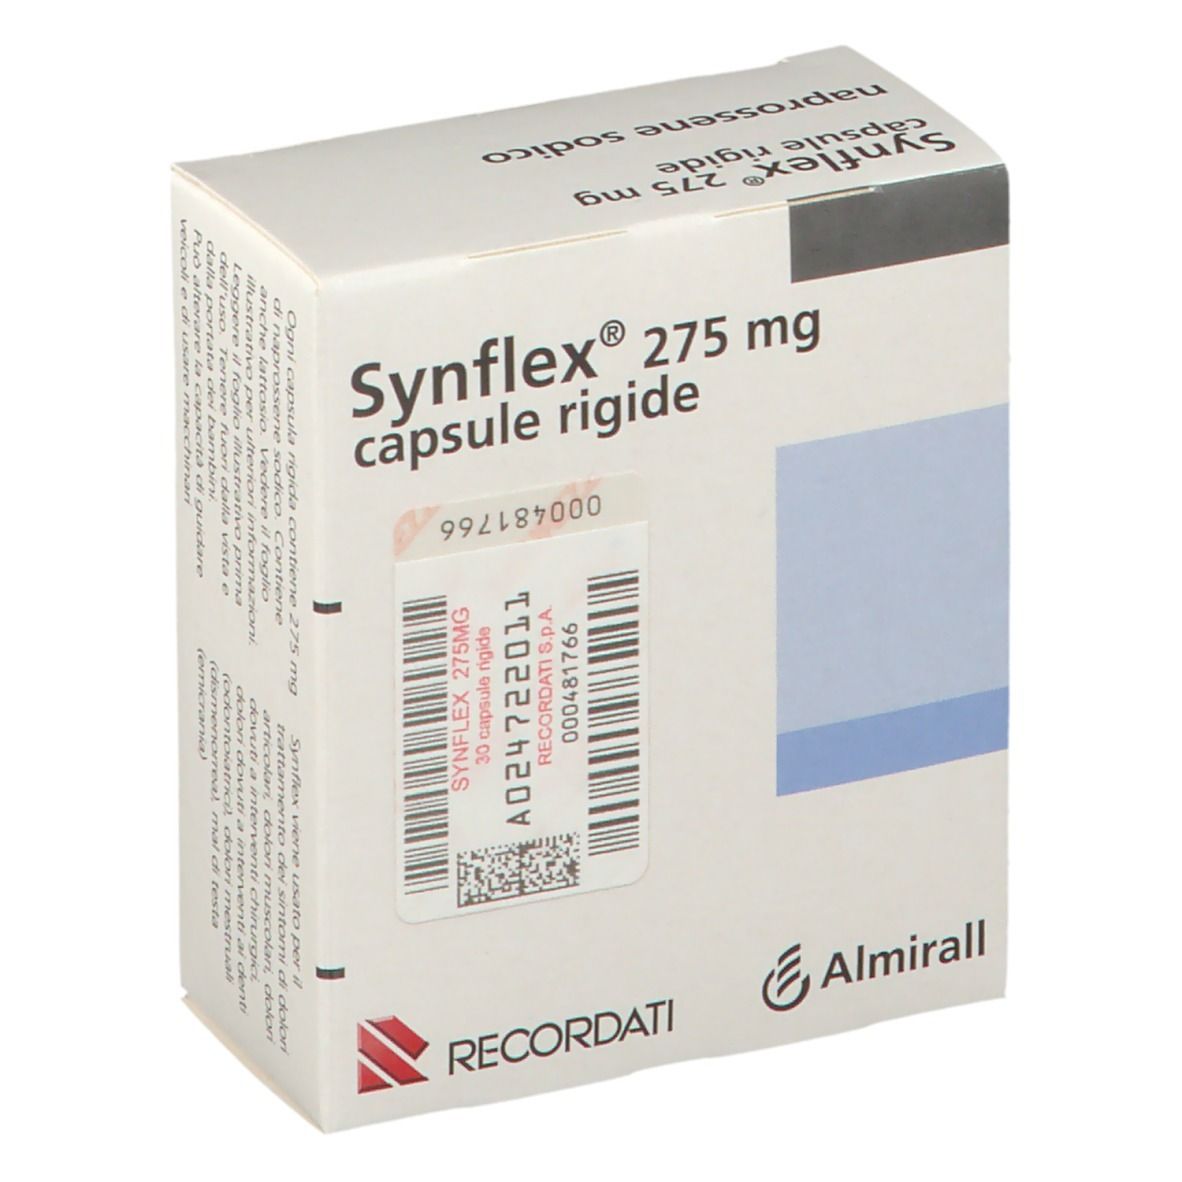 Synflex® capsule rigide